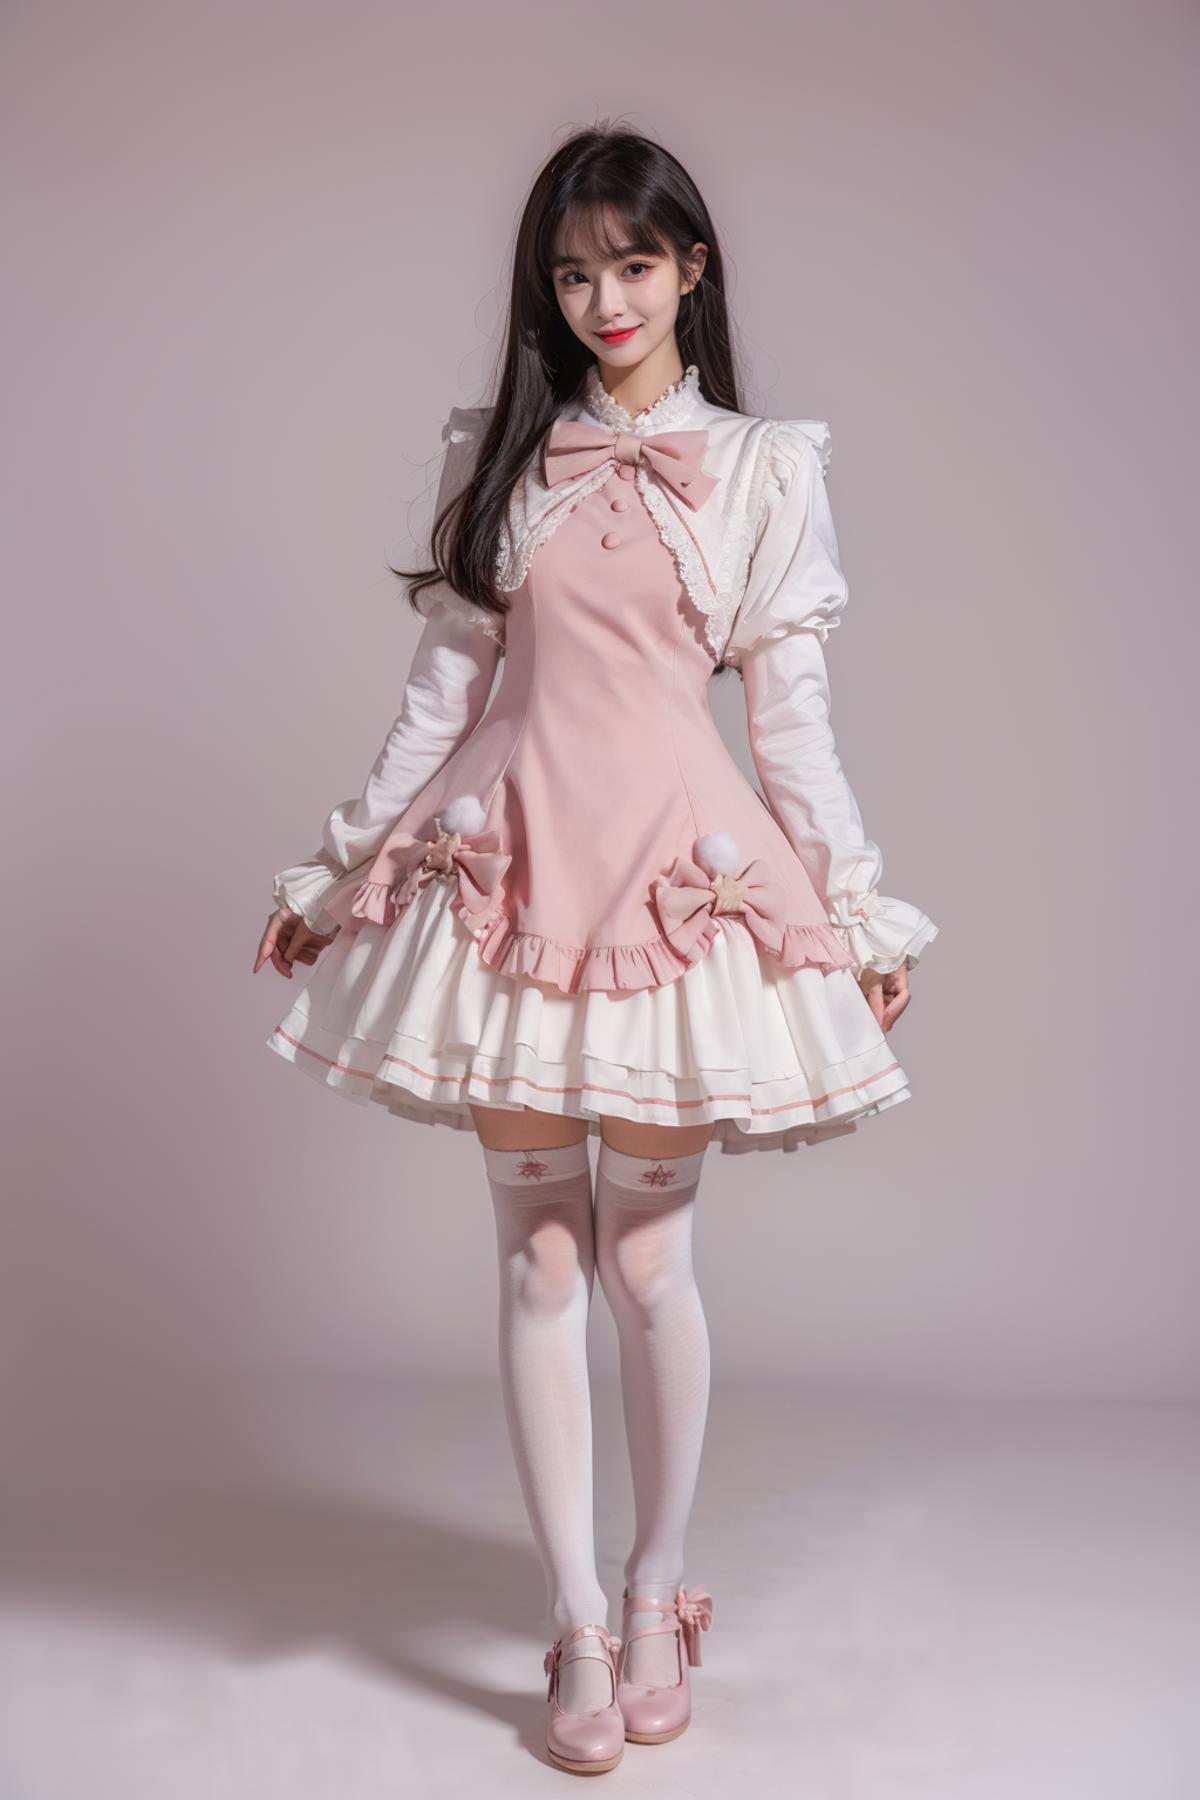 [Realistic] Cute attire | 可爱服装 image by cyberAngel_